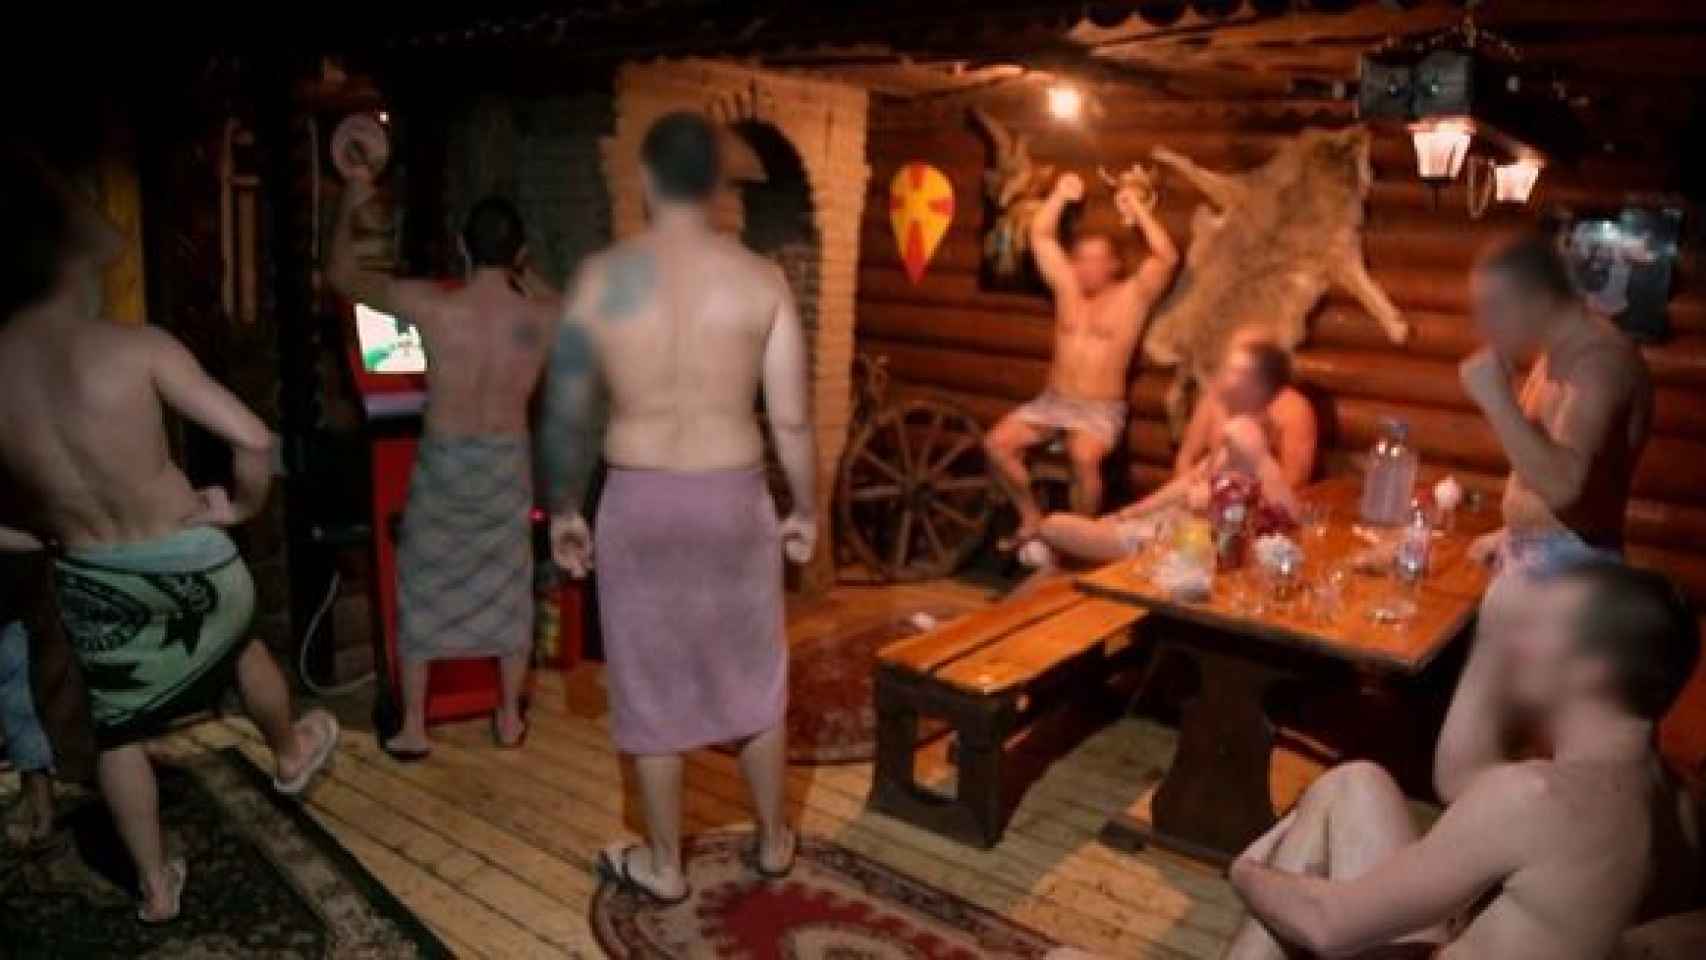 Los ultras se preparan la noche anterior a sus peleas en una sauna.